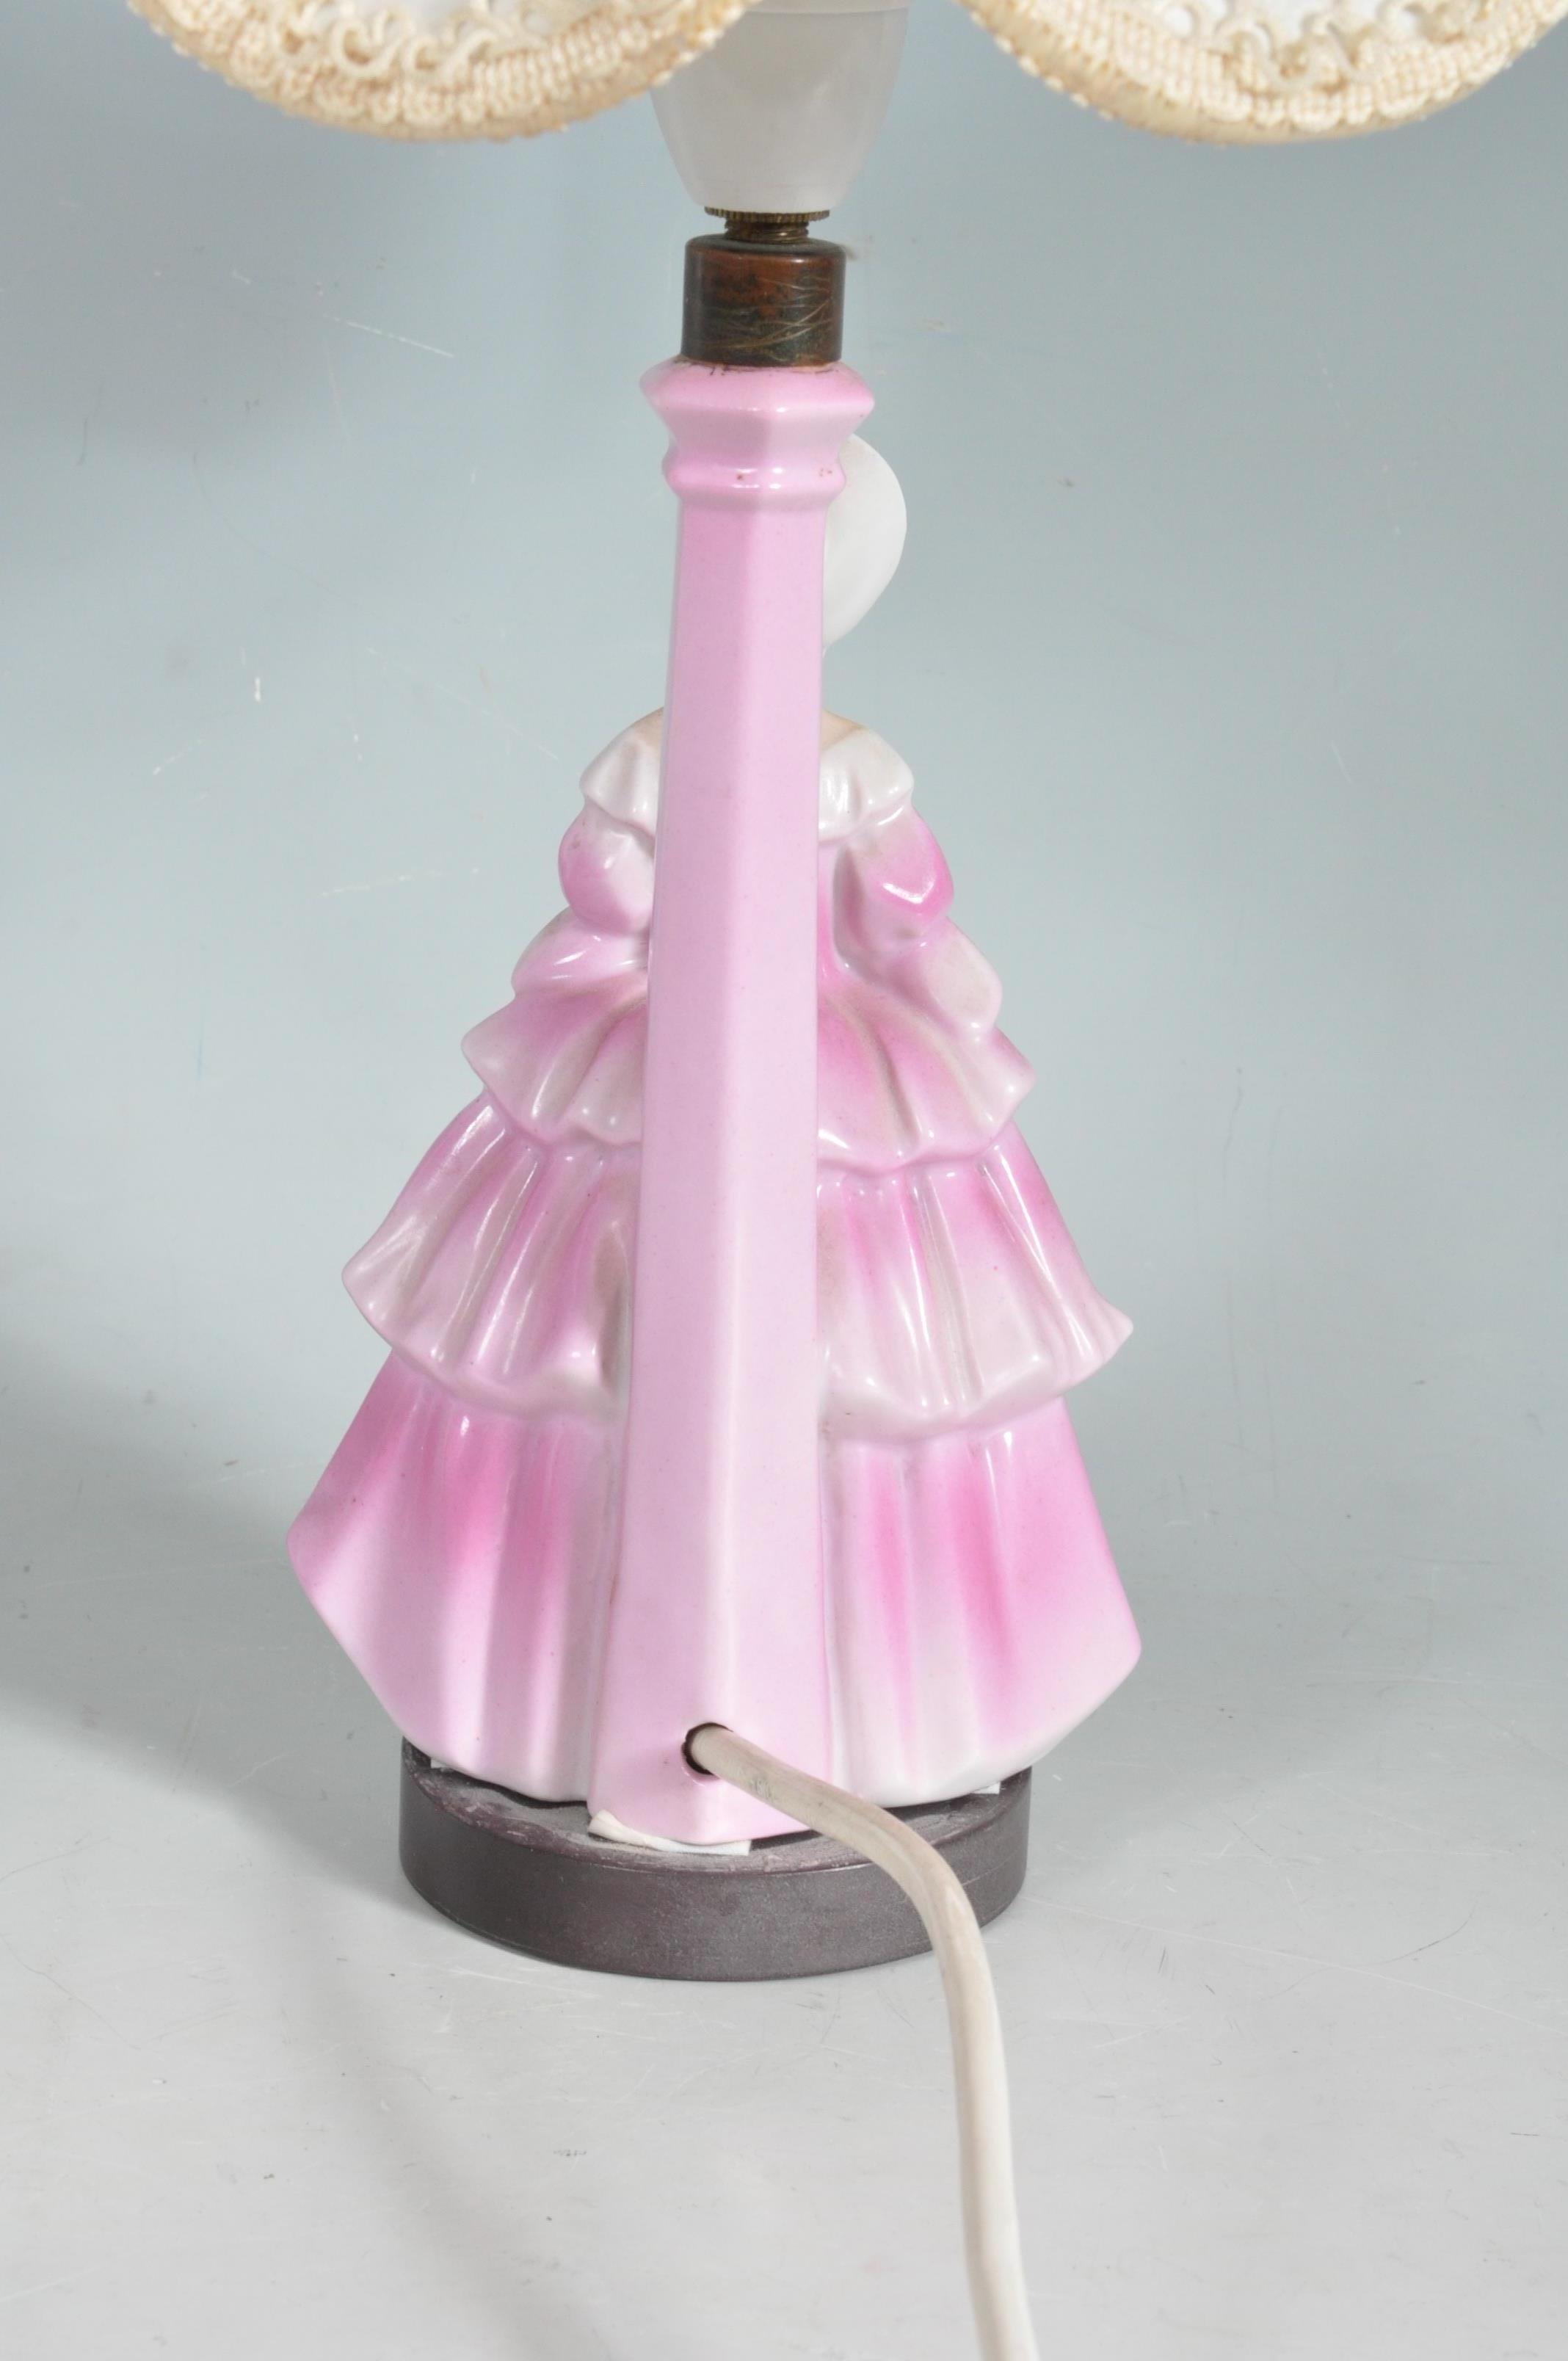 VINTAGE MID 20TH CENTURY CRINOLINE LADY LAMP - Image 4 of 6